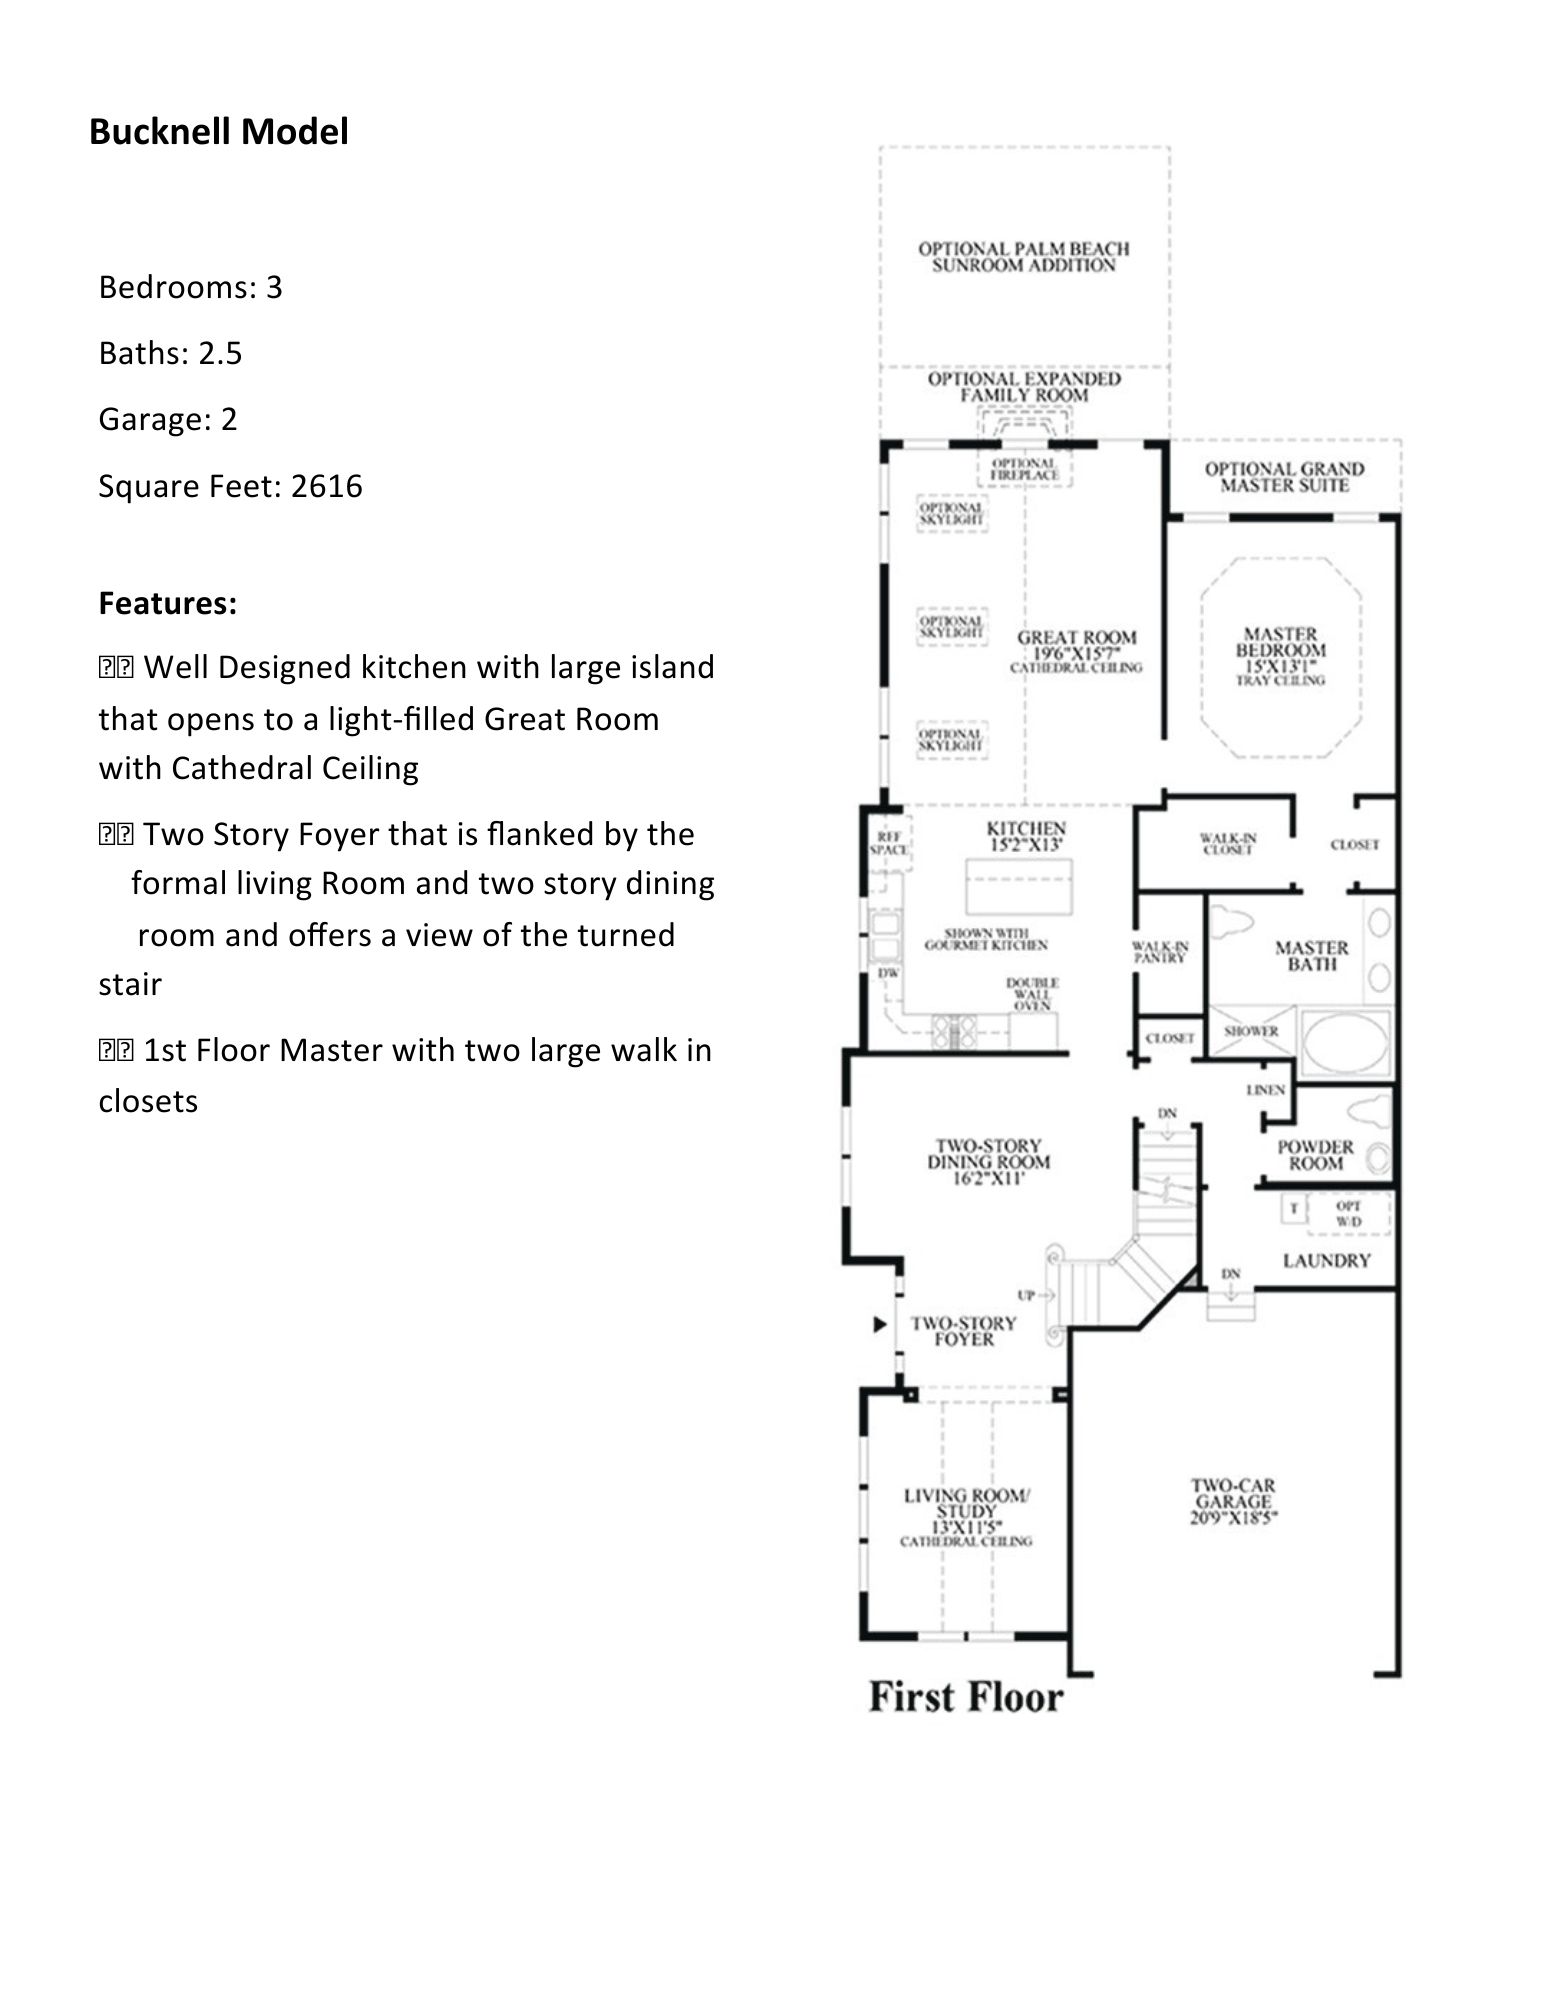 regency of yardley bucknell floor plan1